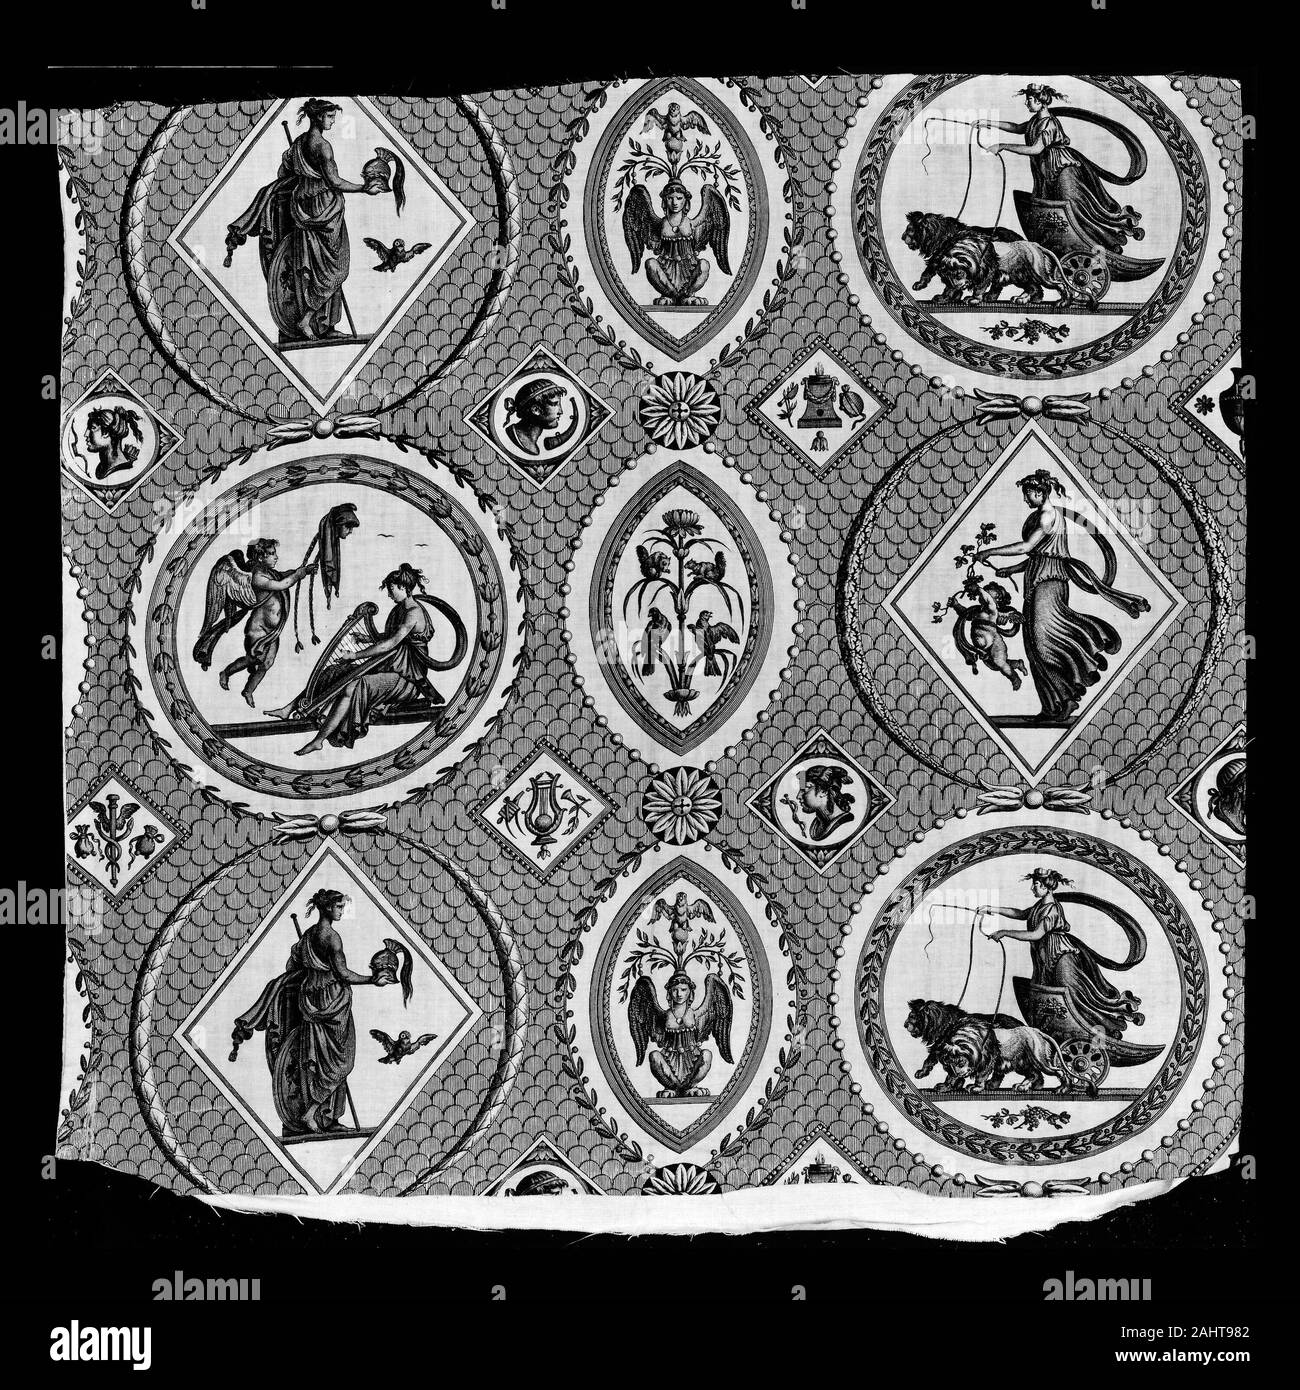 Medaglioni antichi immagini e fotografie stock ad alta risoluzione - Alamy